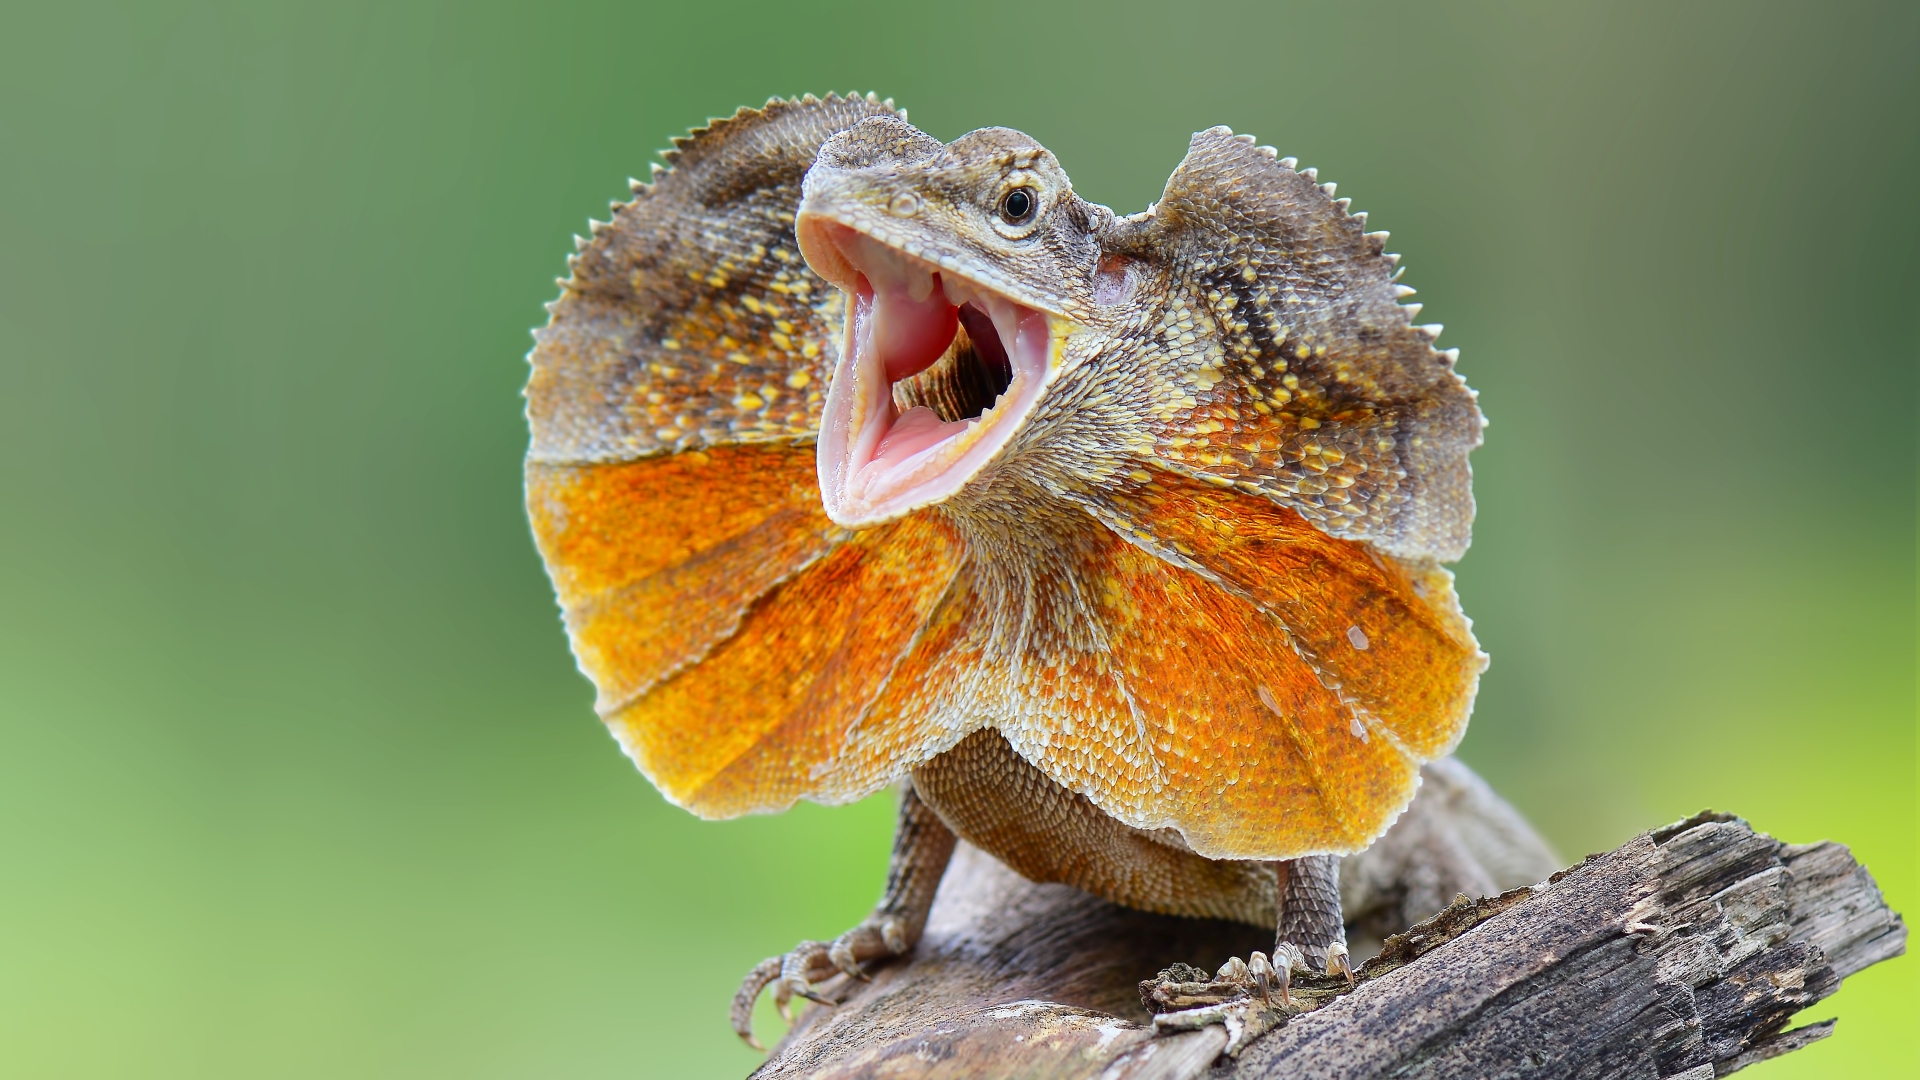 A frilled lizard in Jakarta, Indonesia.